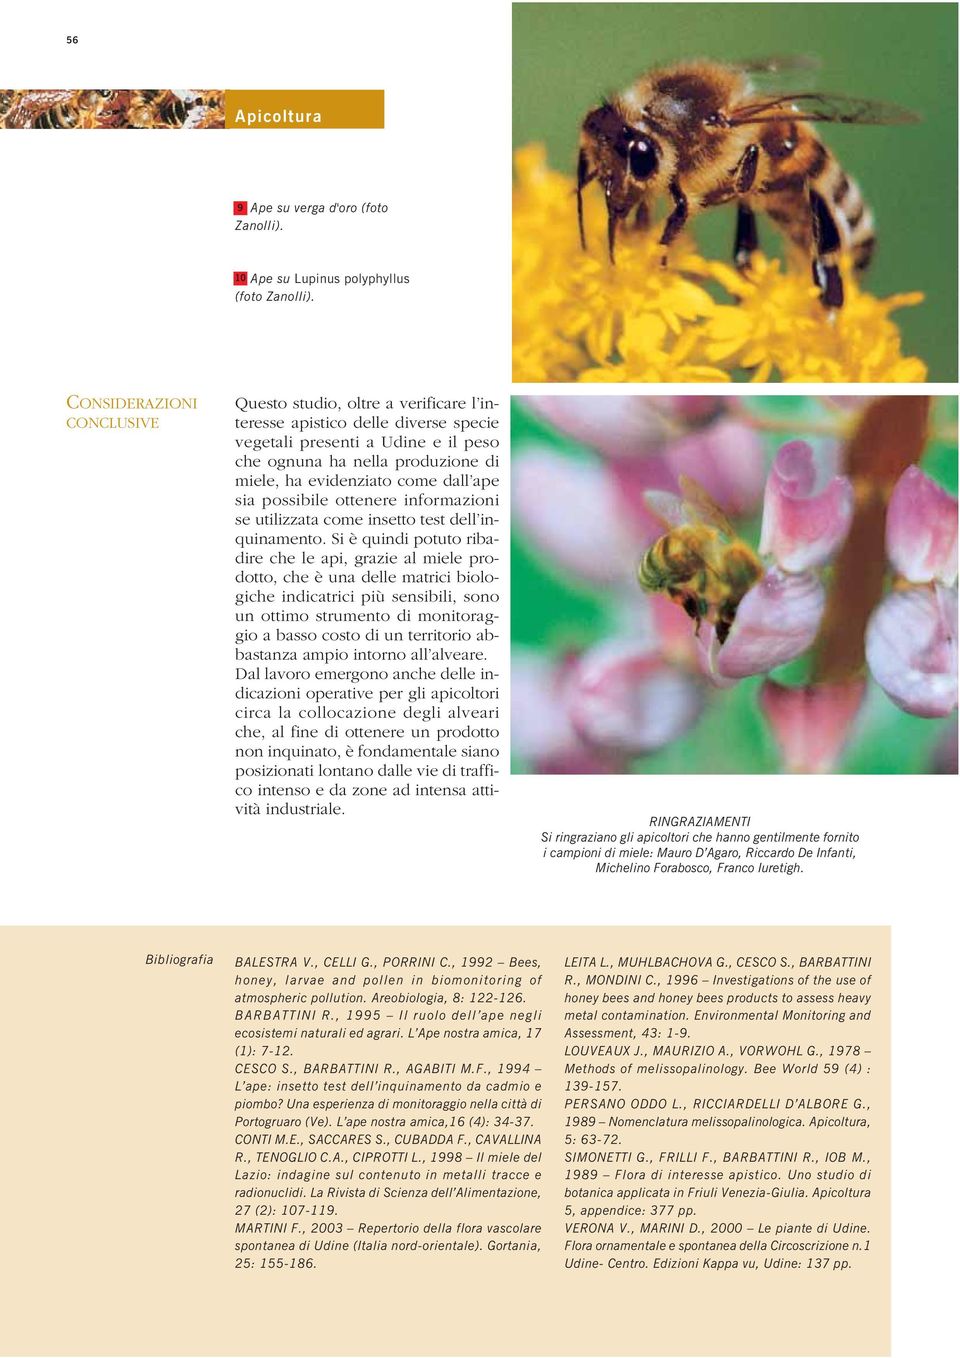 dall ape sia possibile ottenere informazioni se utilizzata come insetto test dell inquinamento.